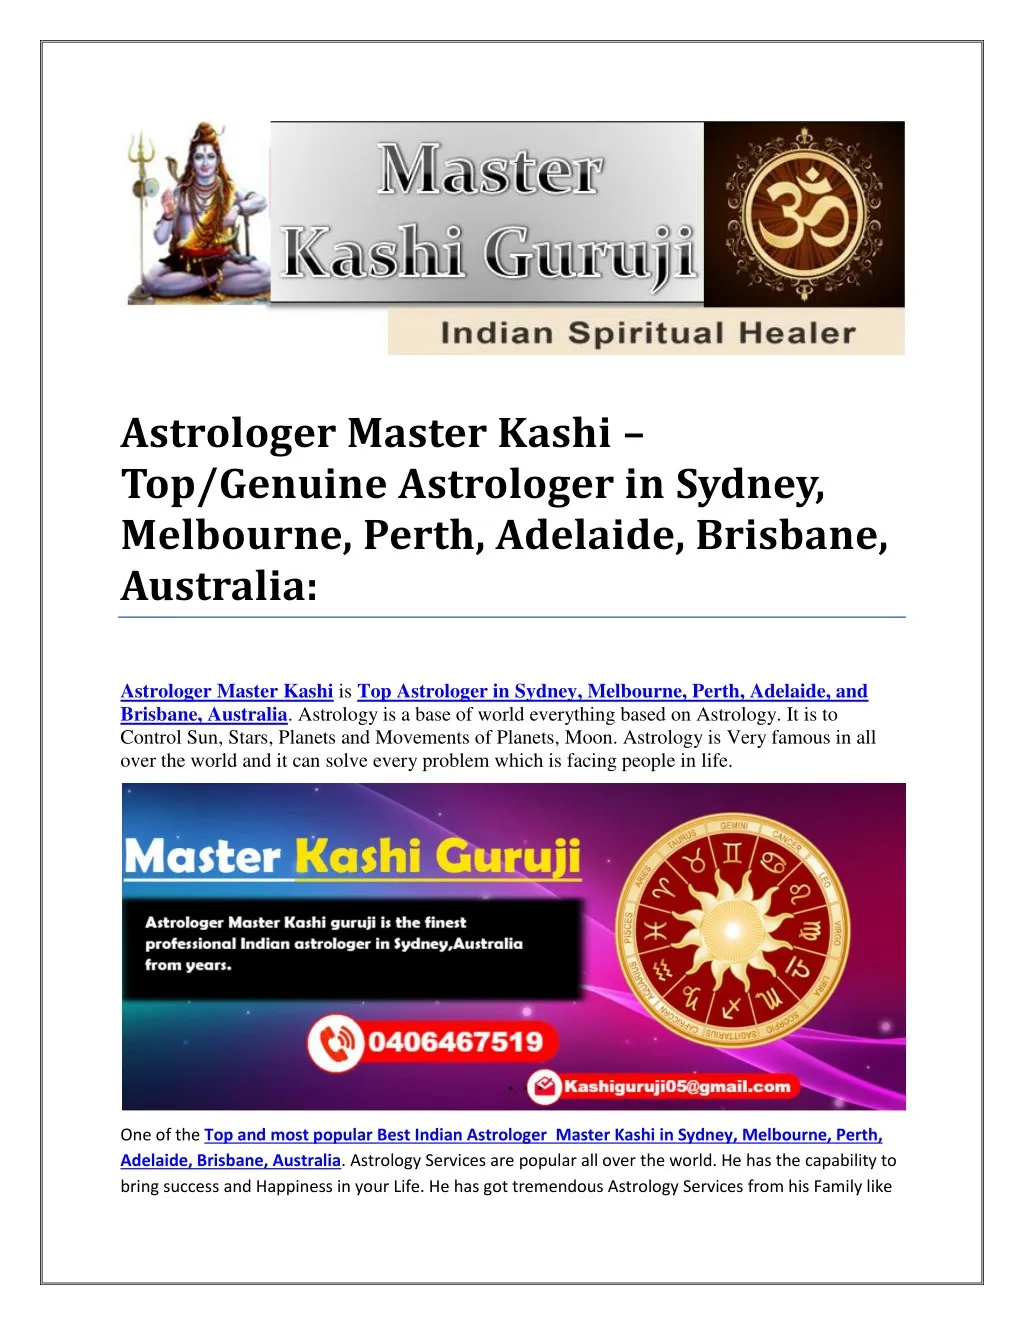 astrologer master kashi top genuine astrologer